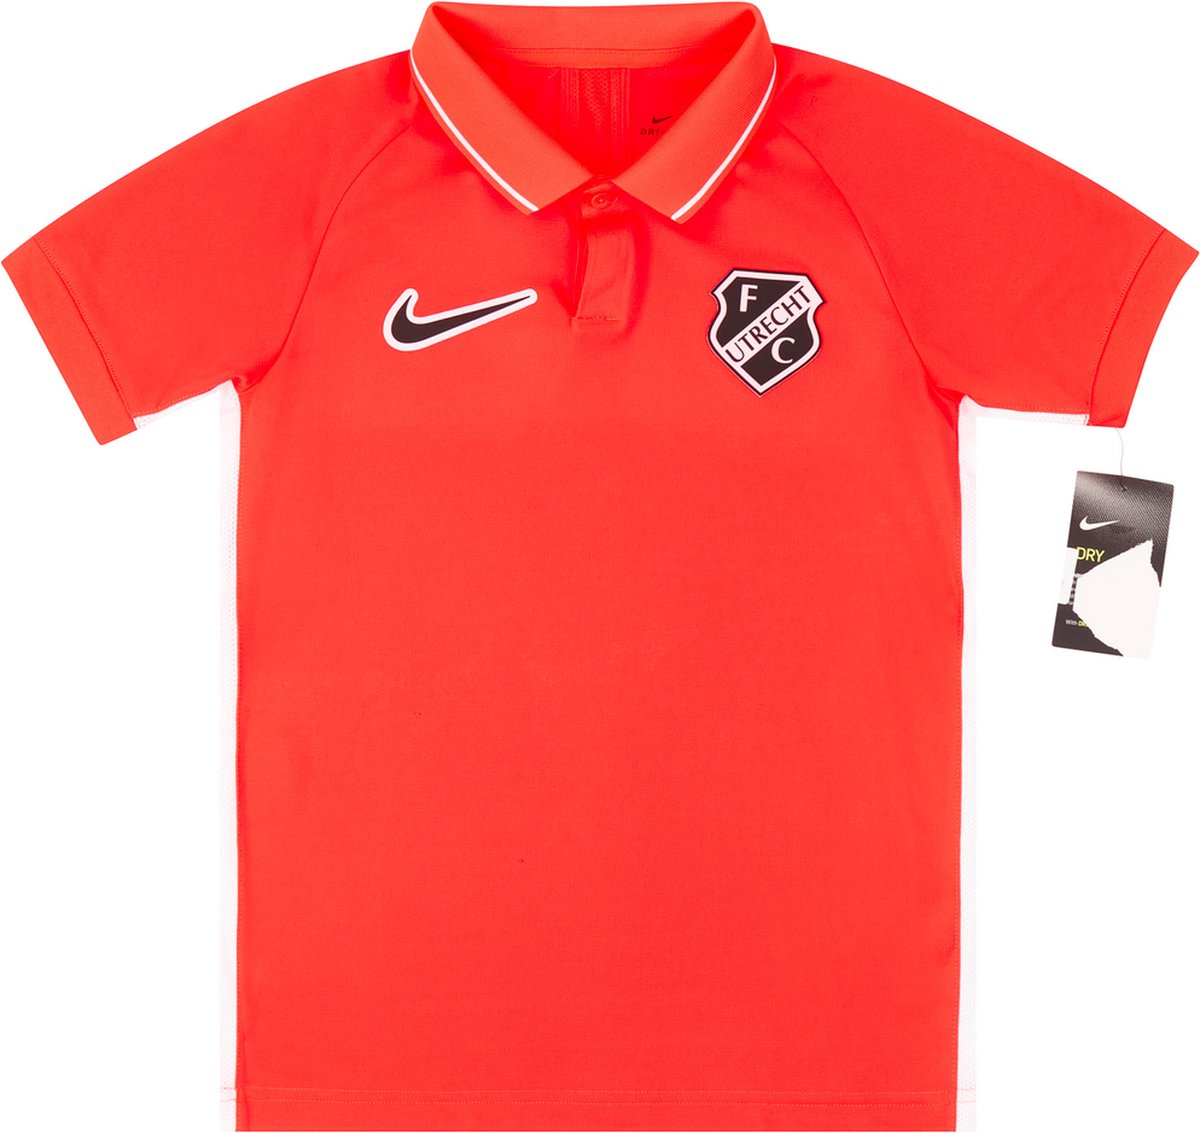 FC Utrecht Nike polo kids maat 170 (14 a 16 jaar)